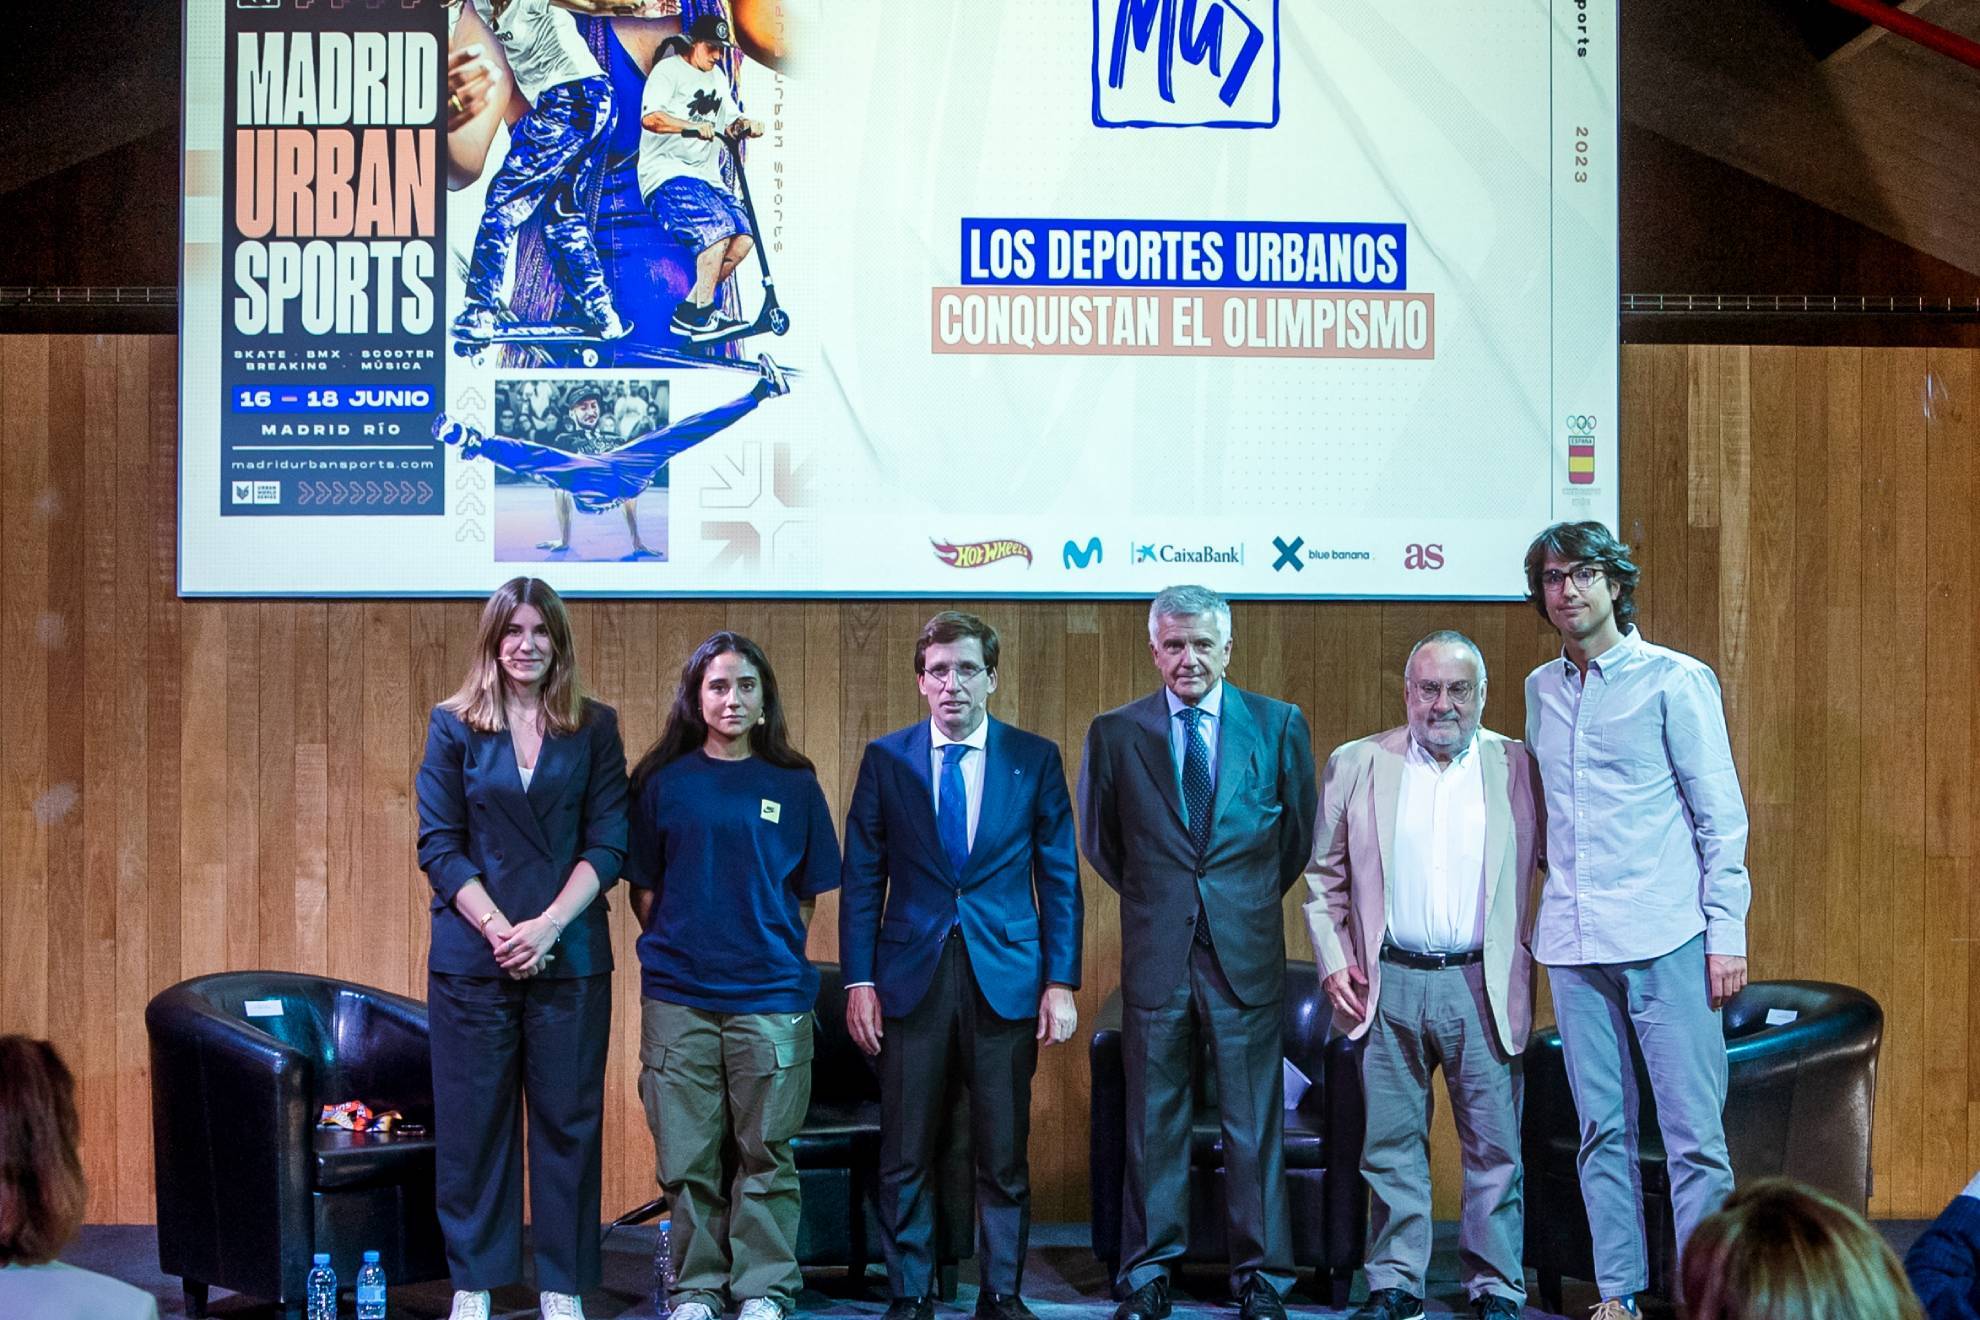 Presentación de 'Madrid Urban Sports'